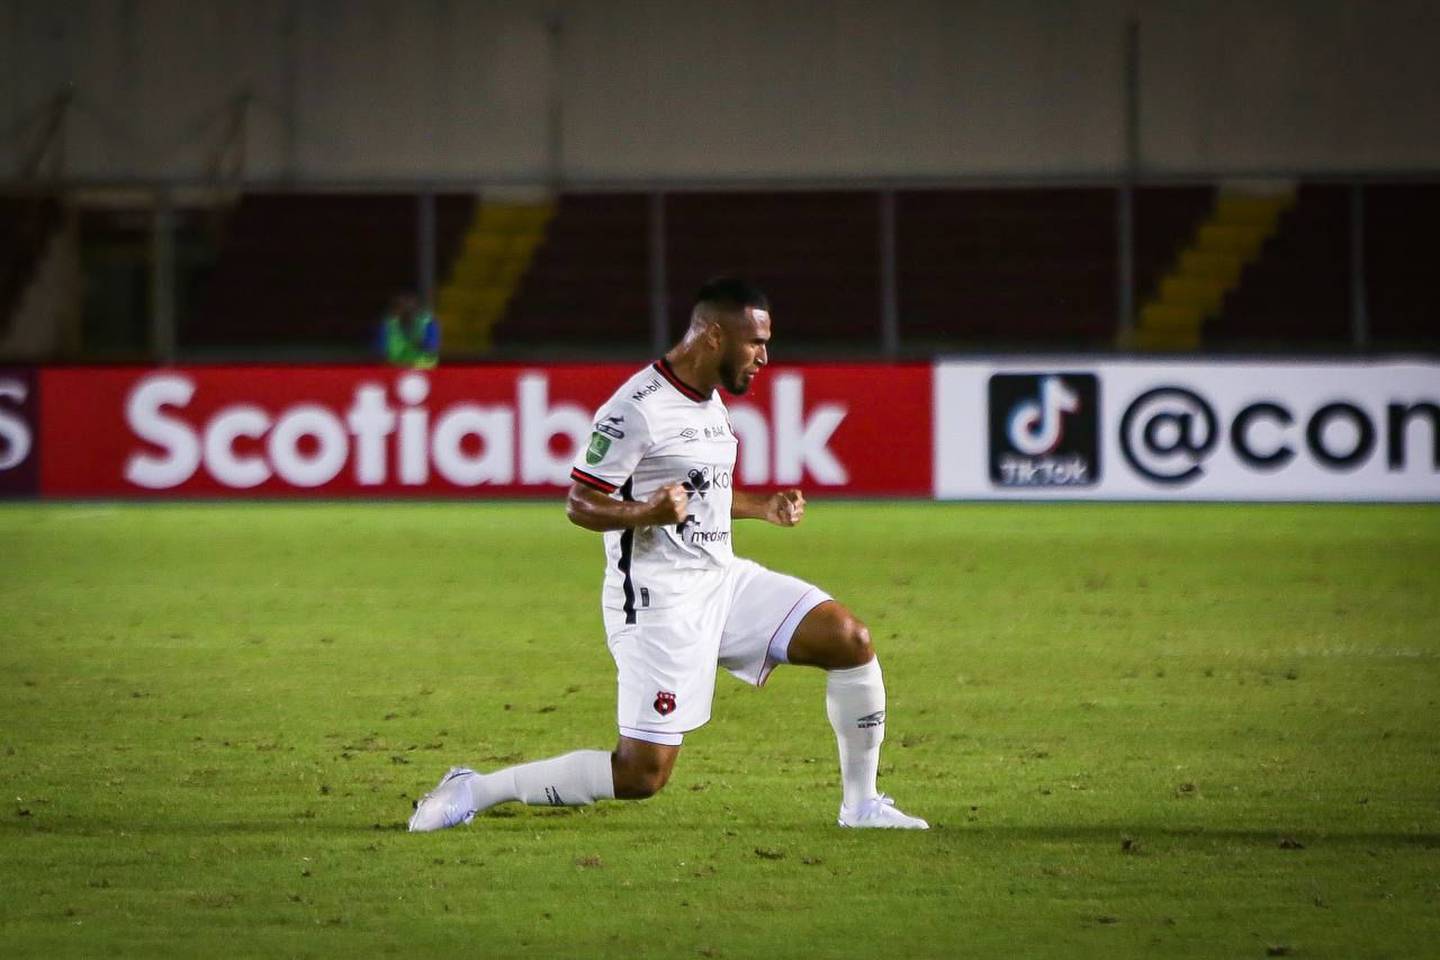 Alajuelense triunfó 1-0 ante el Sporting San Miguelito en Panamá. Foto: Prensa LDA